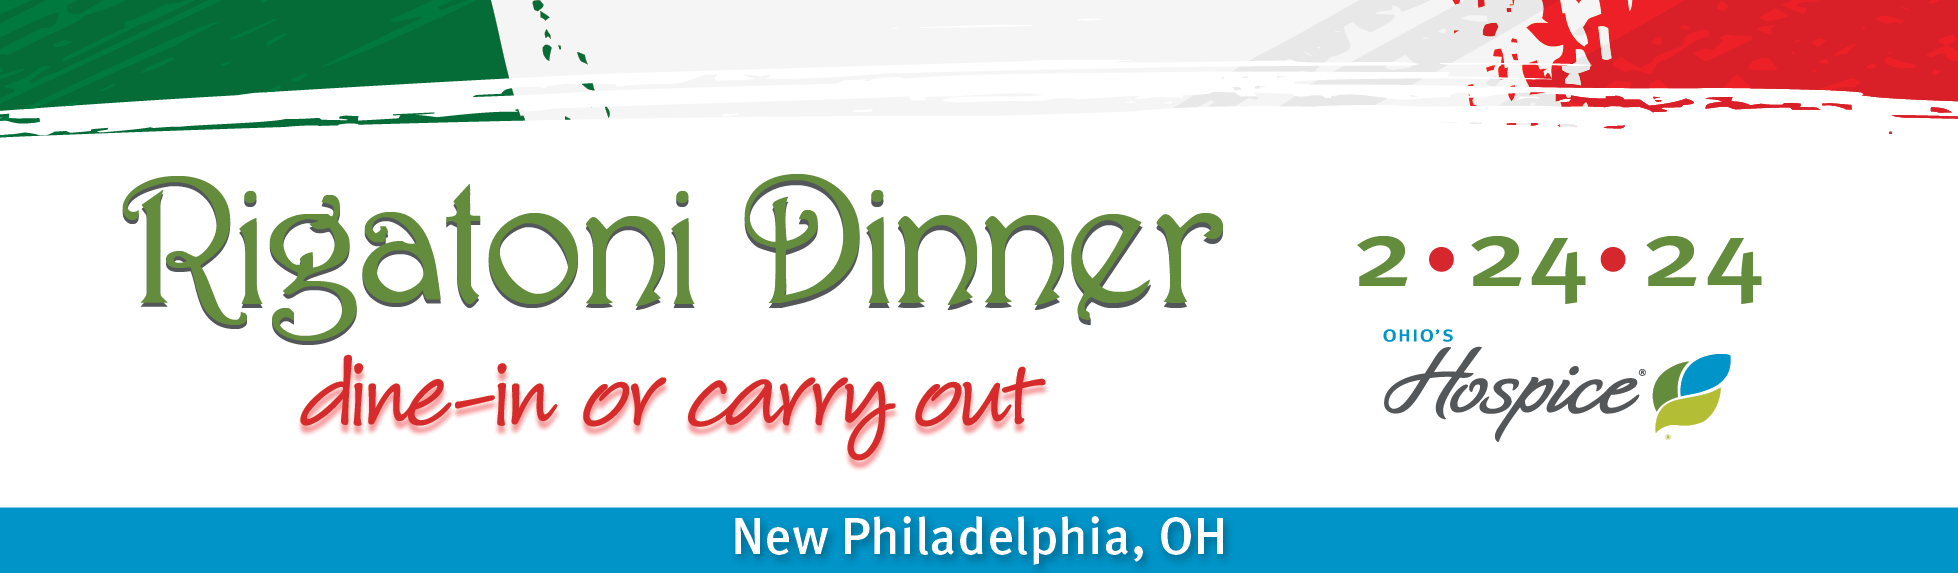 Ohio's Hospice Rigatoni Dinner 2.24.24 New Philadelphia, OH